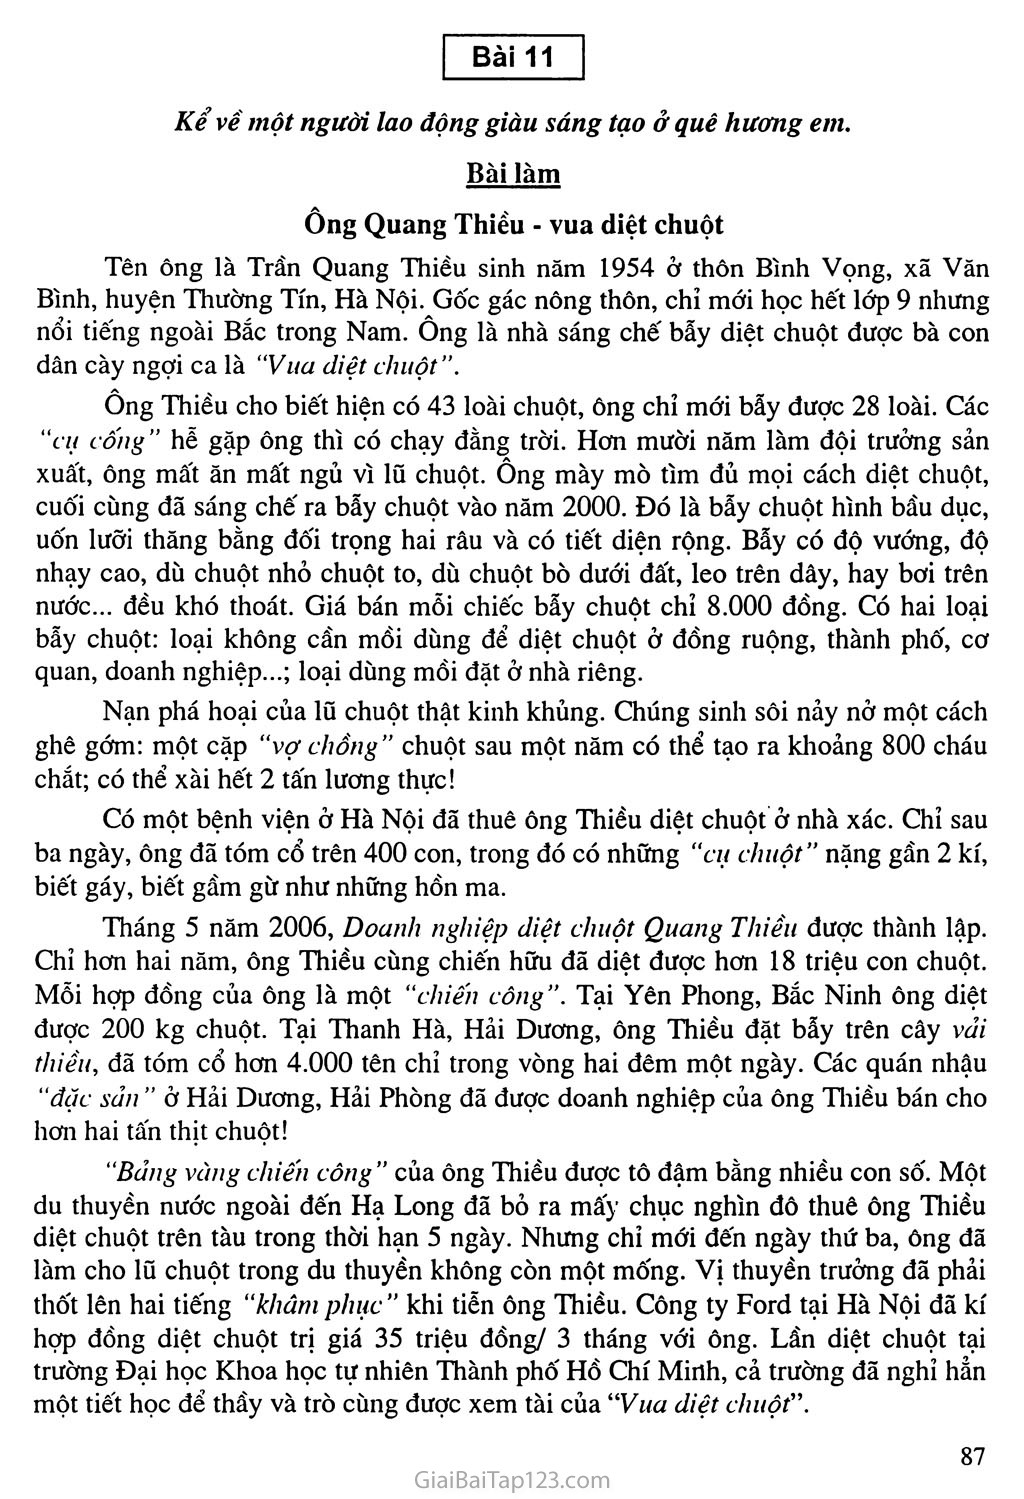 Bài 11: Kể về gương lao động giàu sáng tạo ở quê hương em: Ông Quang Thiều vua diệt chuột trang 1